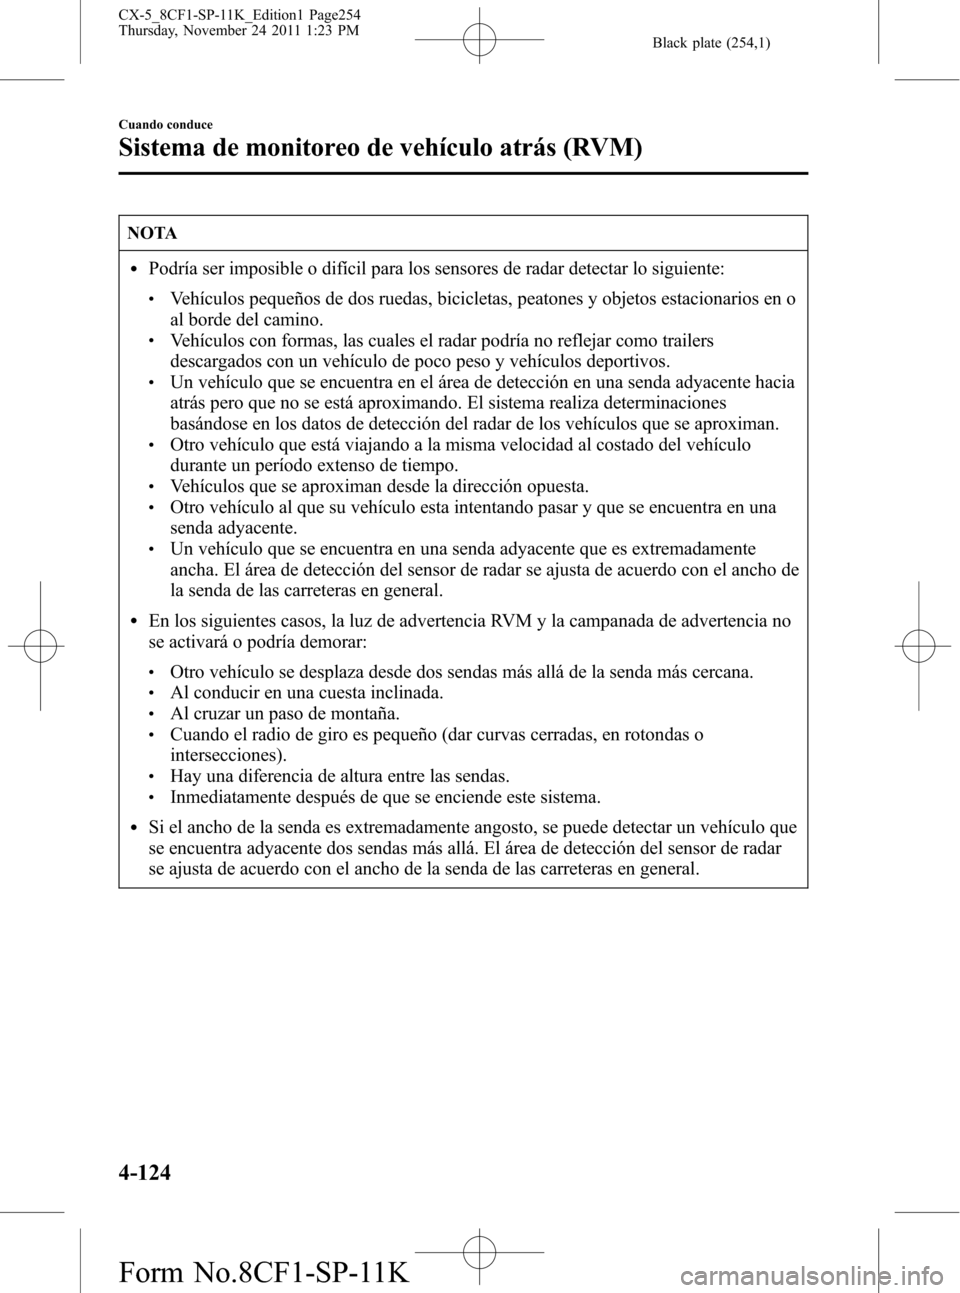 MAZDA MODEL CX-5 2012  Manual del propietario (in Spanish)  Black plate (254,1)
NOTA
lPodría ser imposible o difícil para los sensores de radar detectar lo siguiente:
lVehículos pequeños de dos ruedas, bicicletas, peatones y objetos estacionarios en o
al b